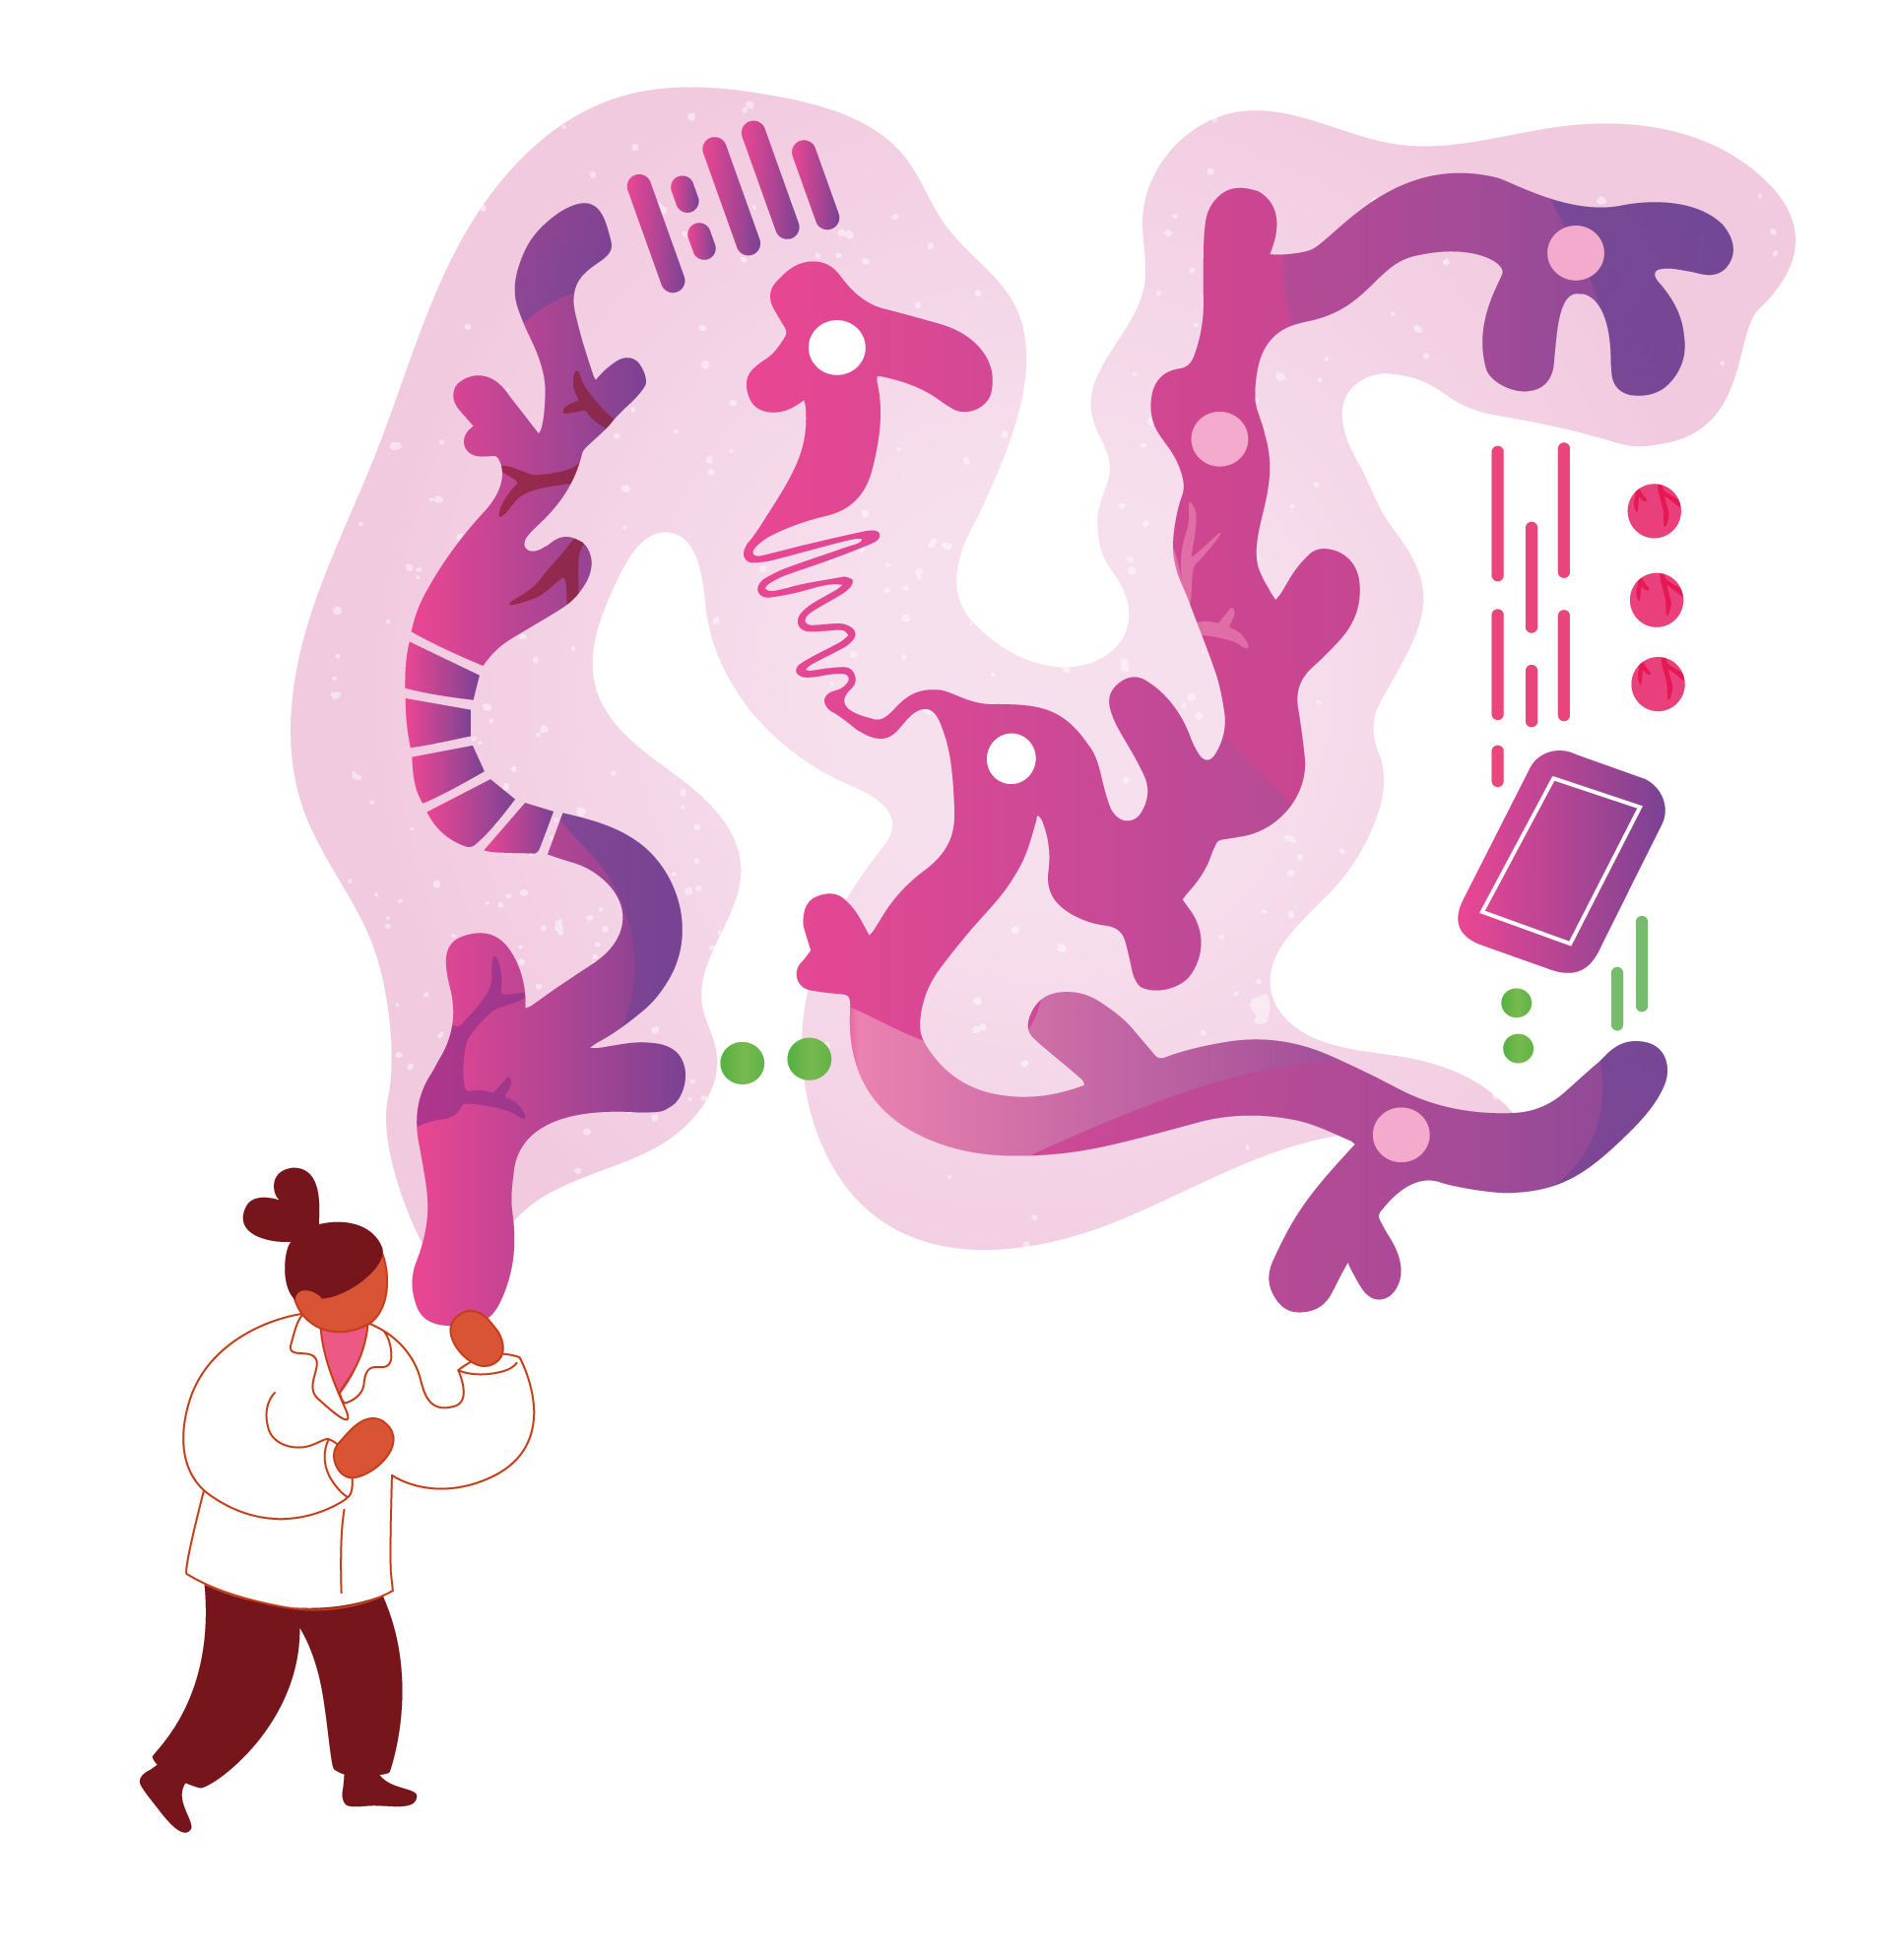 Piirroskuva tutkijahahmosta, jonka kädestä lähtee solumaisia violetteja ja vaaleanpunaisia muotoja, joiden toisessa päässä on älypuhelin.